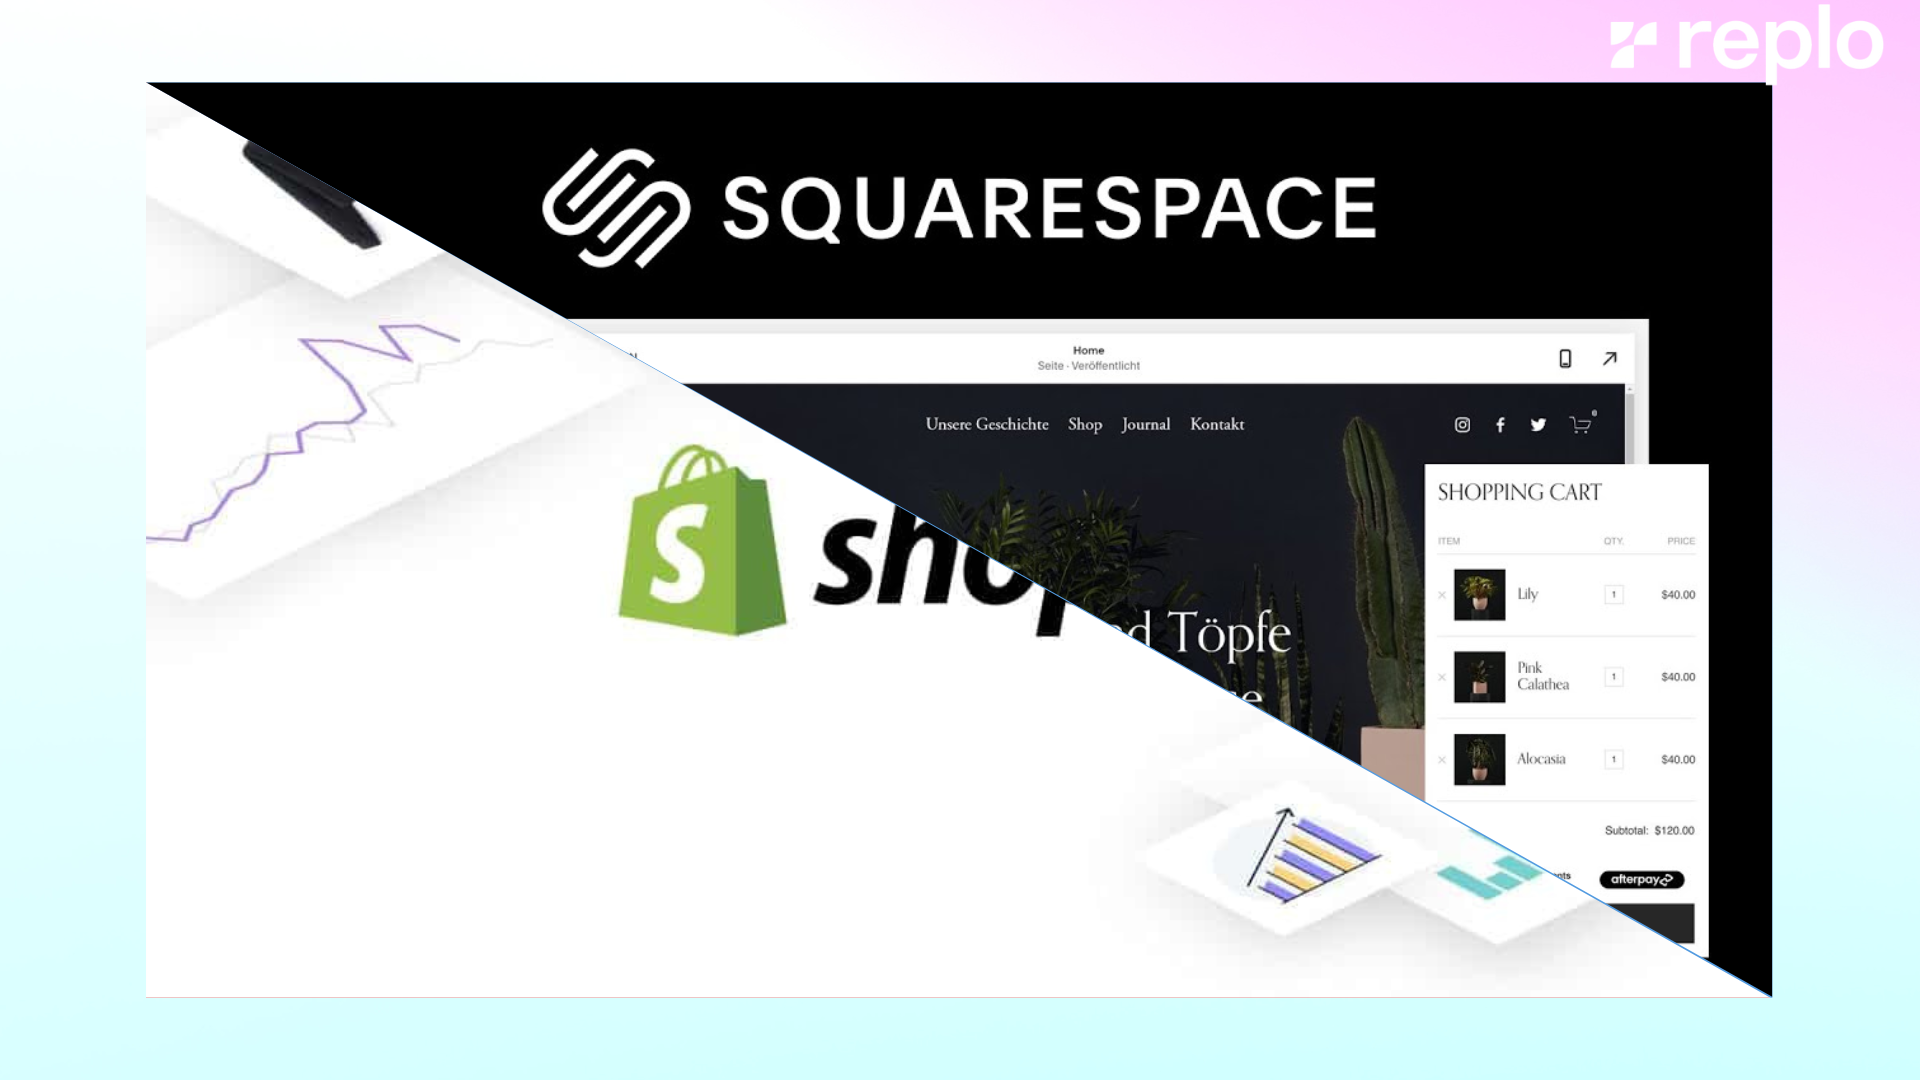 Squarespace Vs Shopify